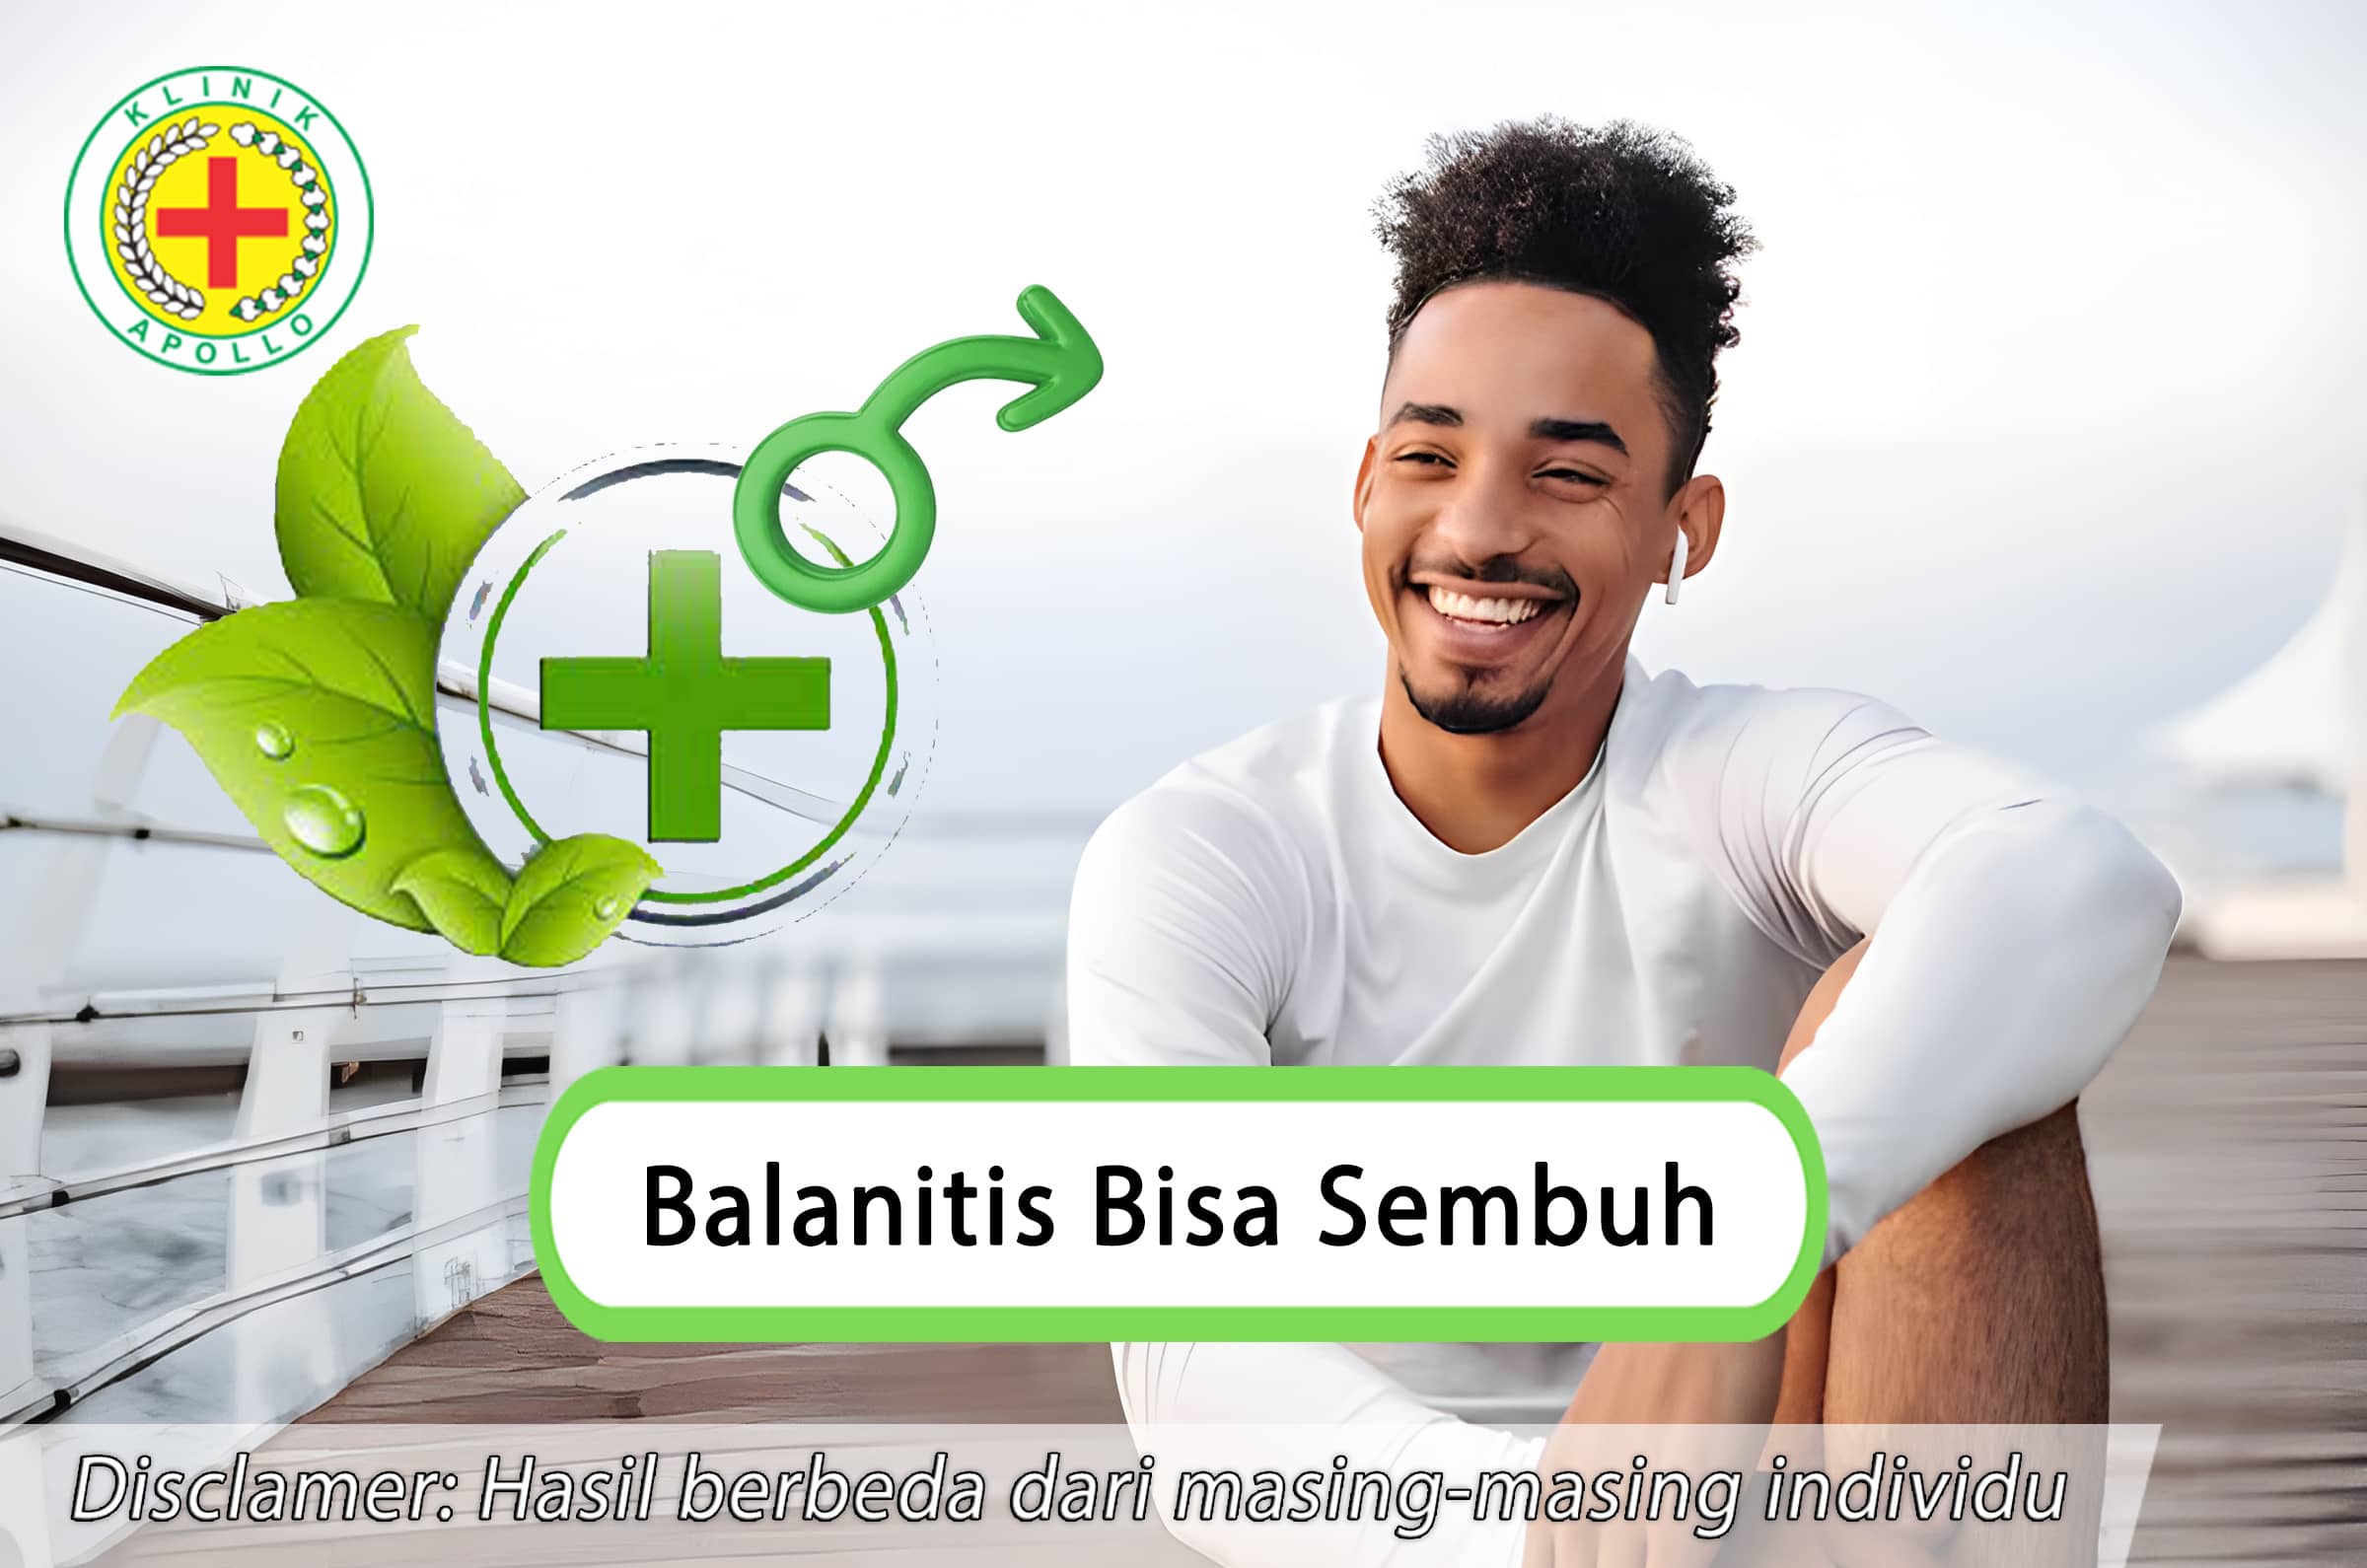 Balanitis bisa sembuh dengan penanganan yang tepat oleh dokter ahli di Klinik Apollo Jakarta.